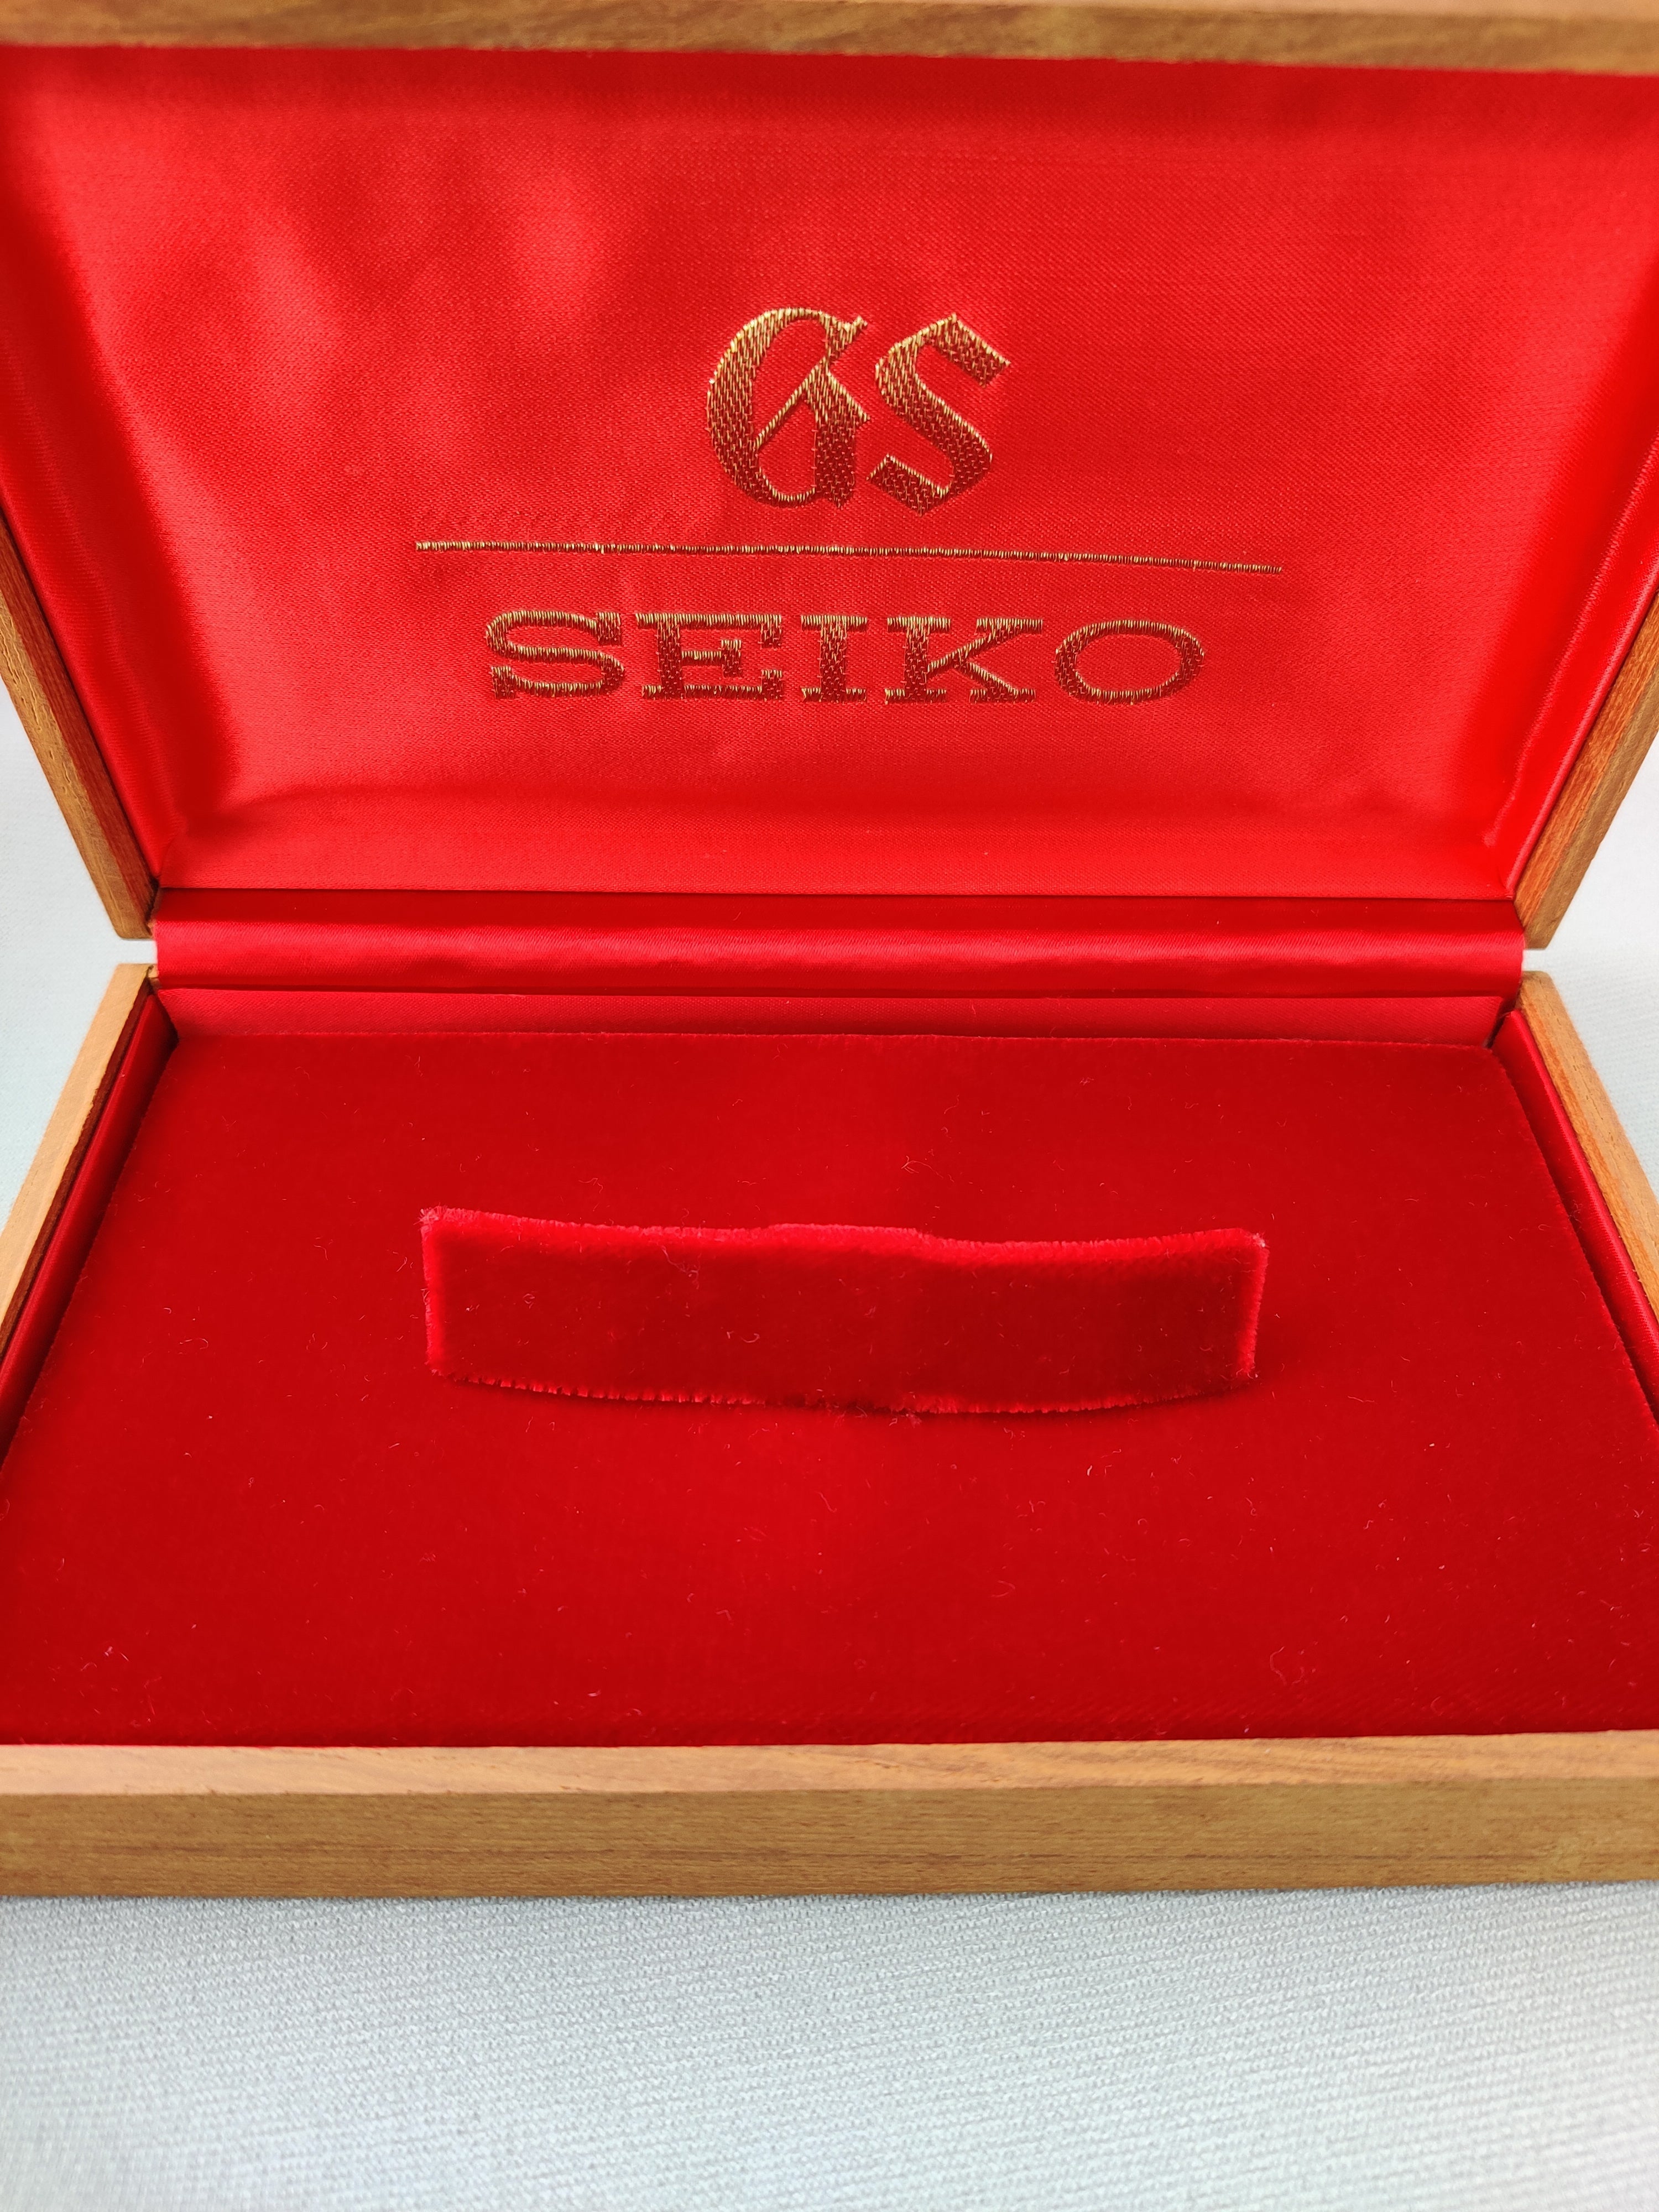 Grand Seiko 5646-7010 from 1973 (Original Box and Bracelet)